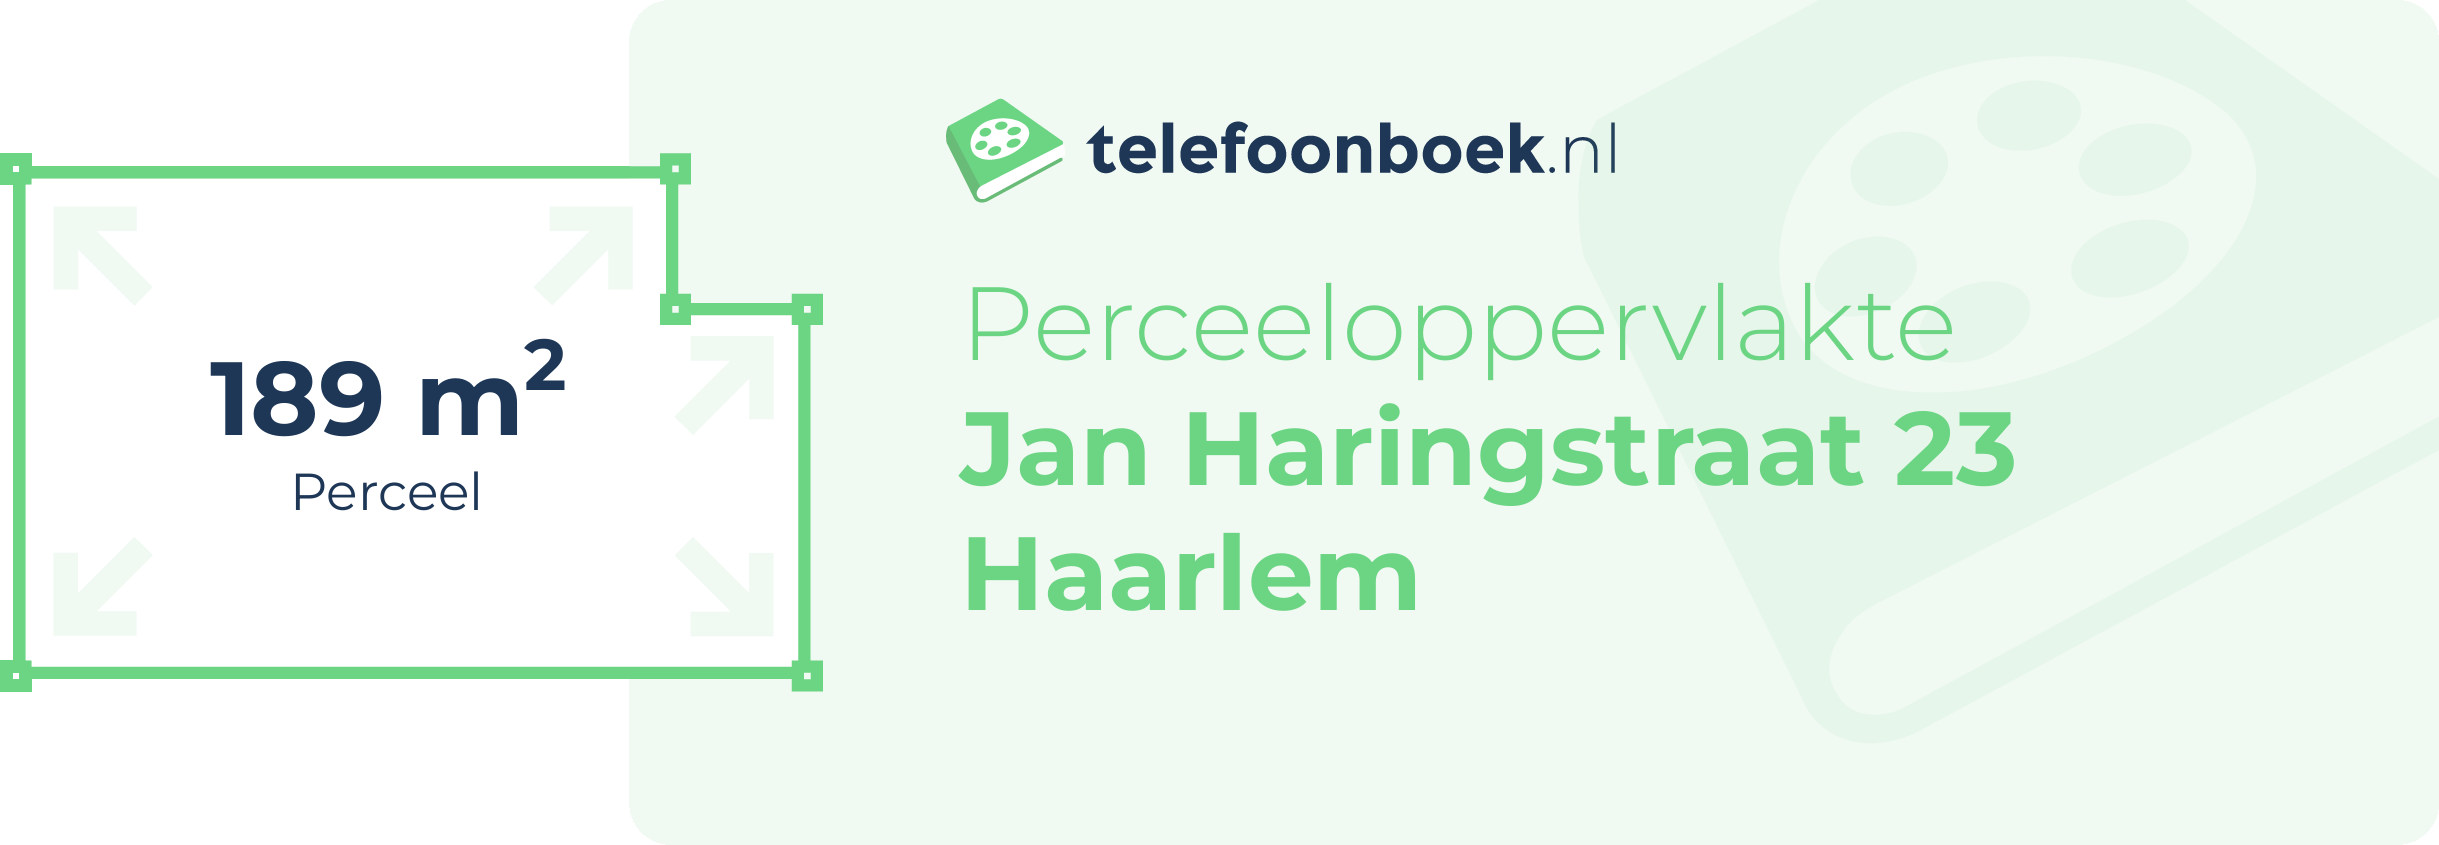 Perceeloppervlakte Jan Haringstraat 23 Haarlem